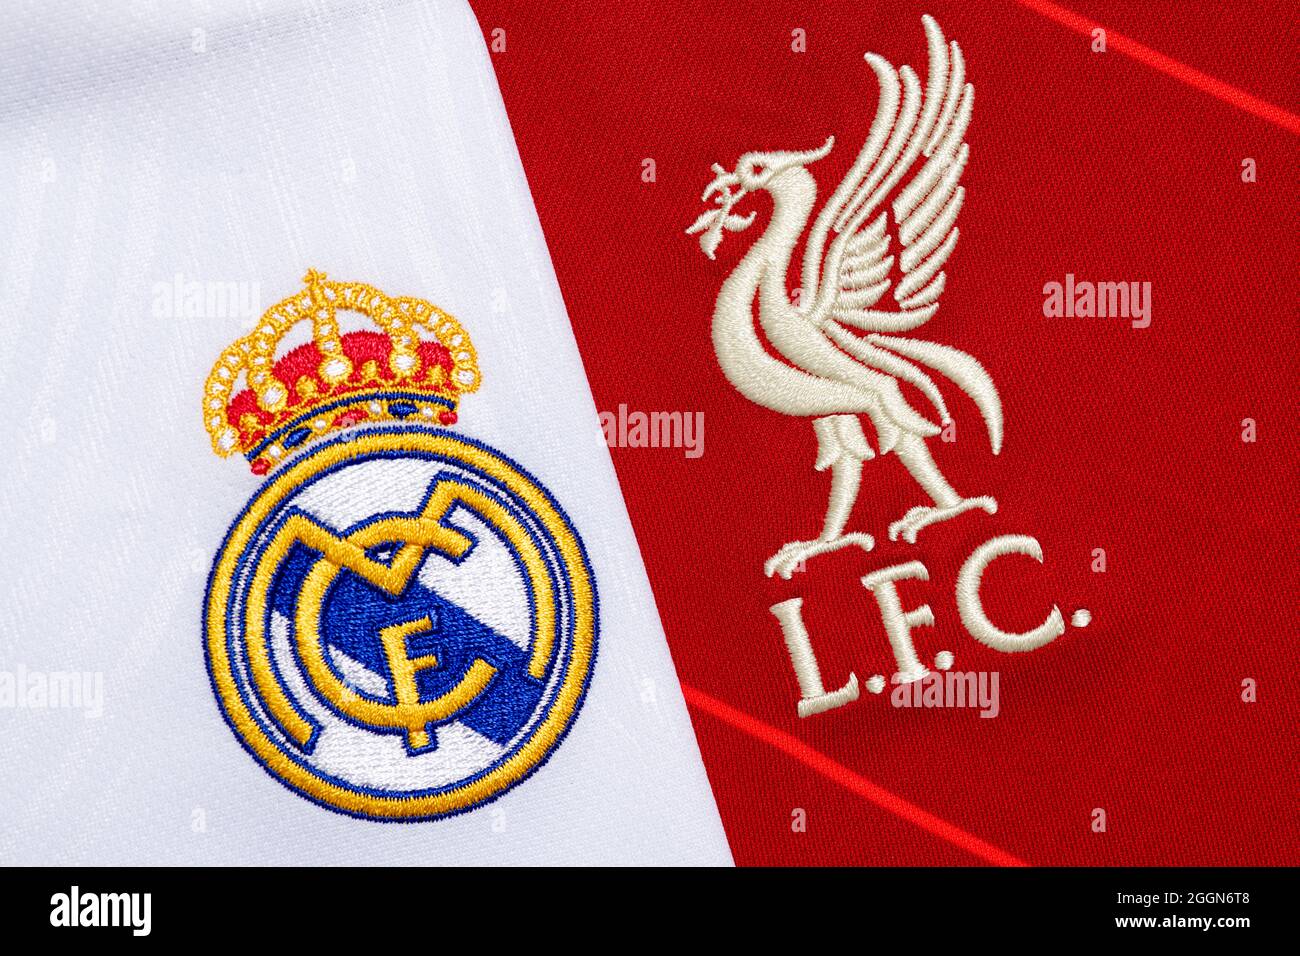 Primo piano dello stemma del club Liverpool & Real Madrid. Foto Stock